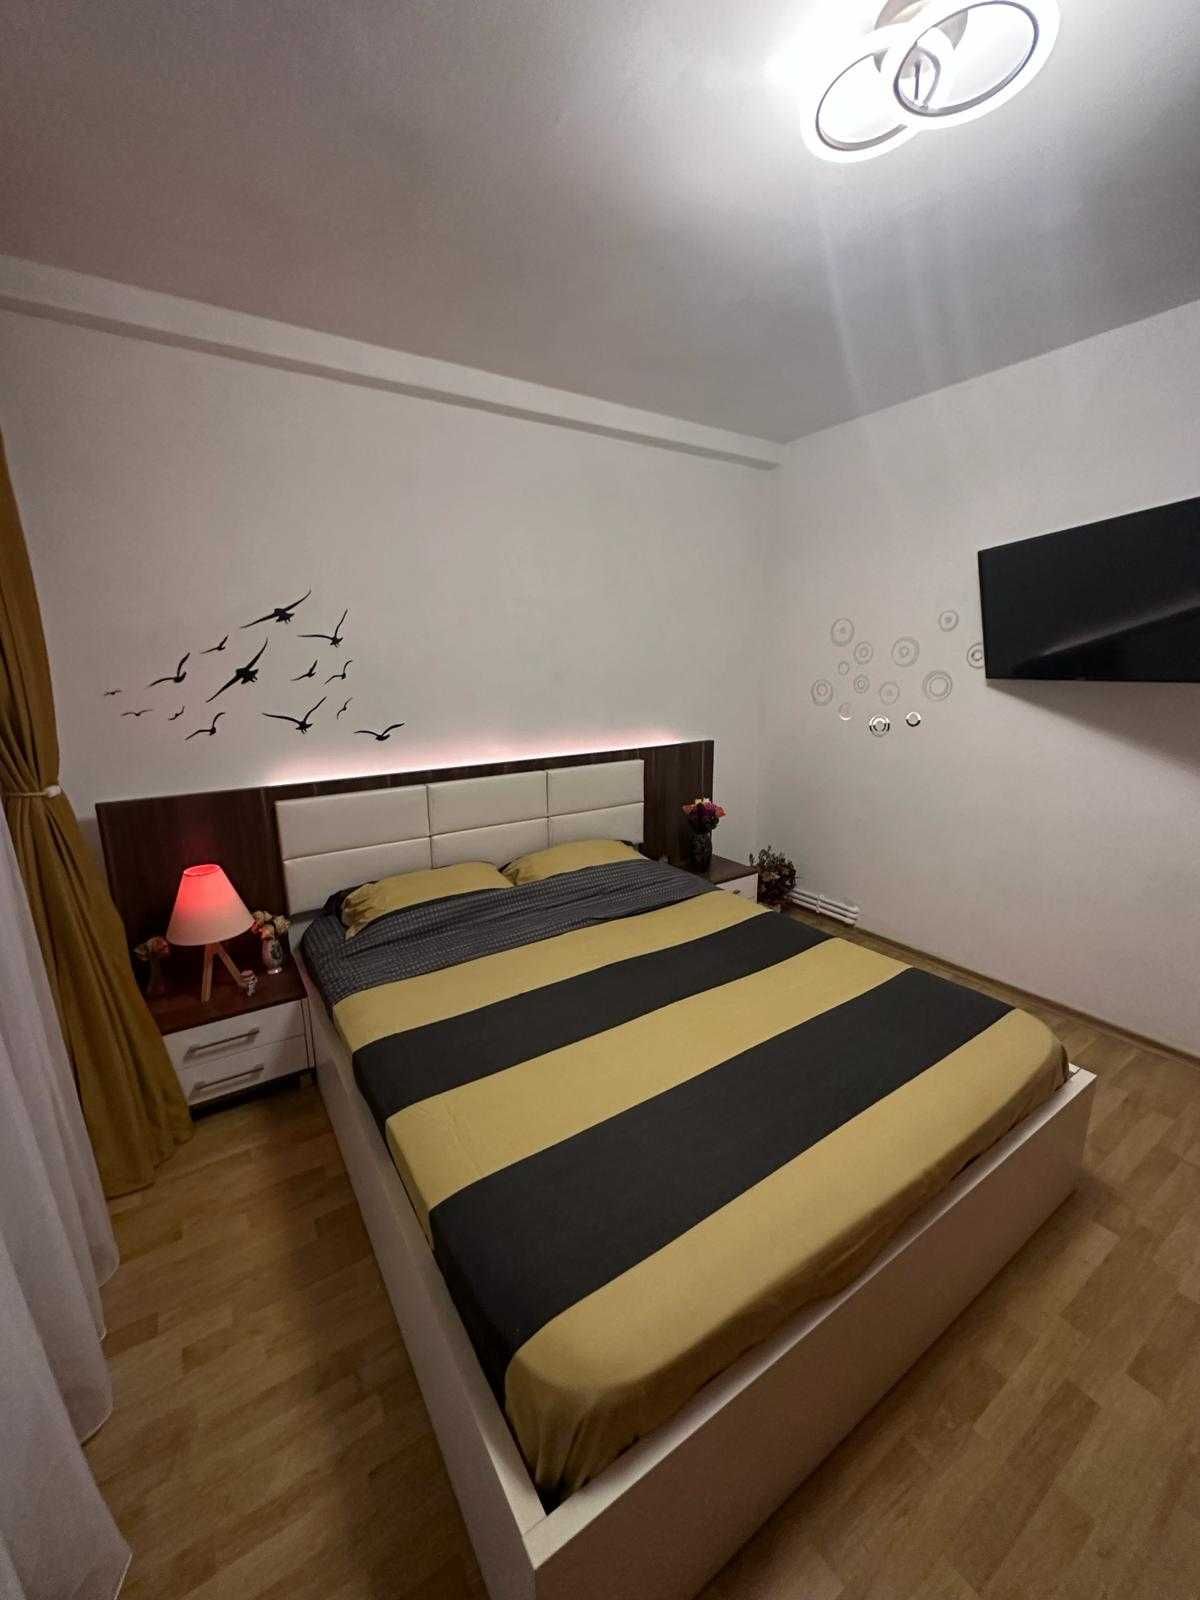 Cazare in regim hotelier - Apartament - Constanta